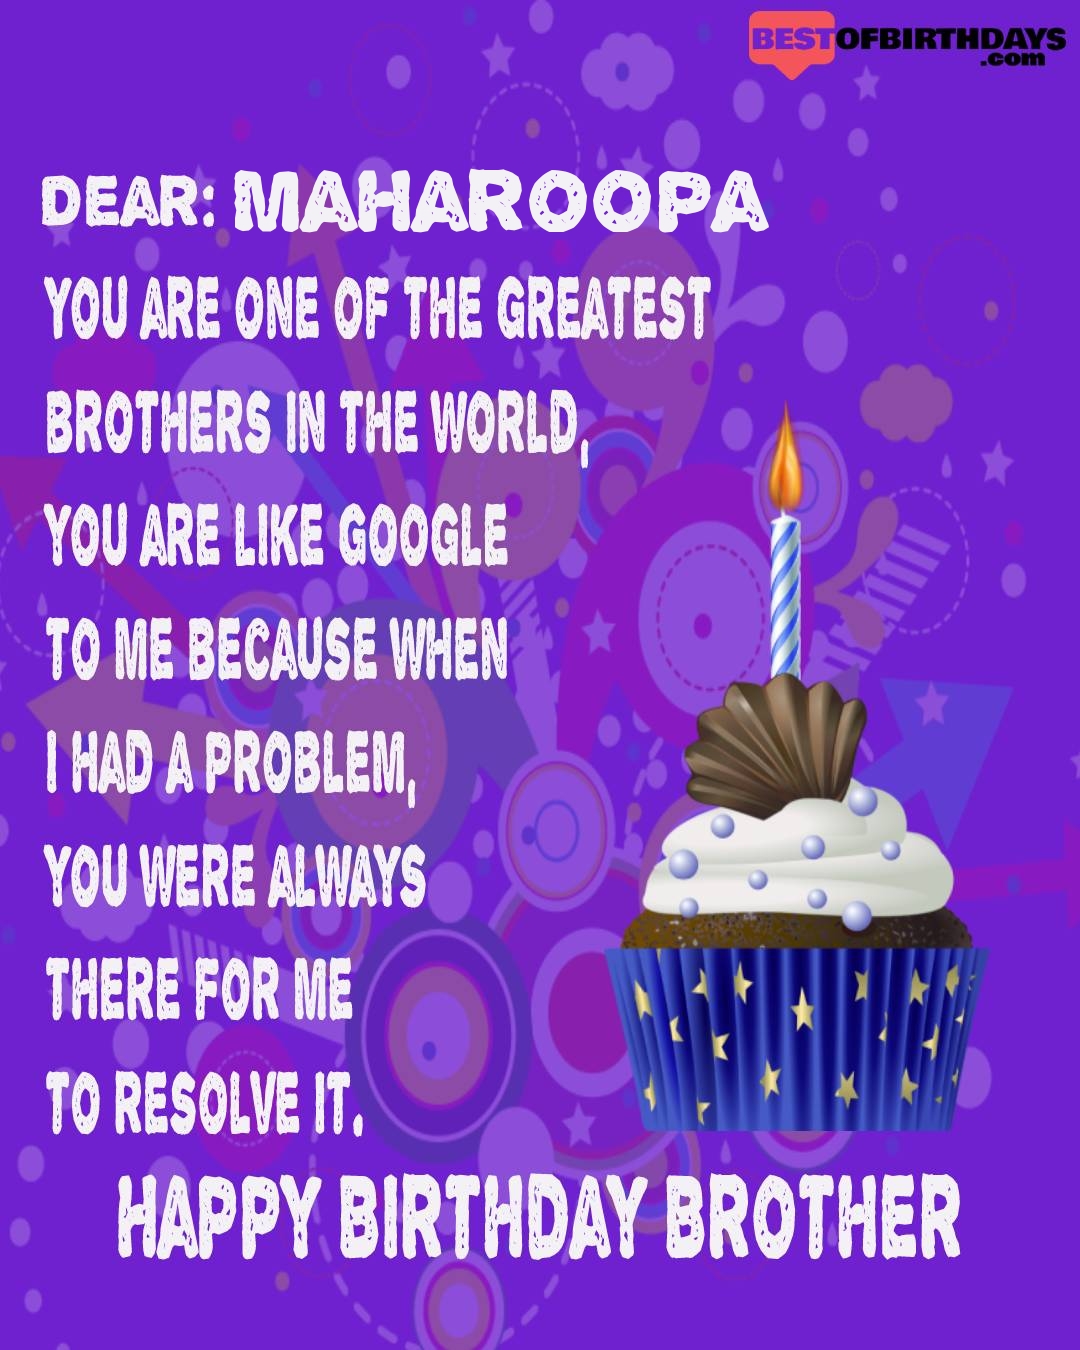 Happy birthday maharoopa bhai brother bro